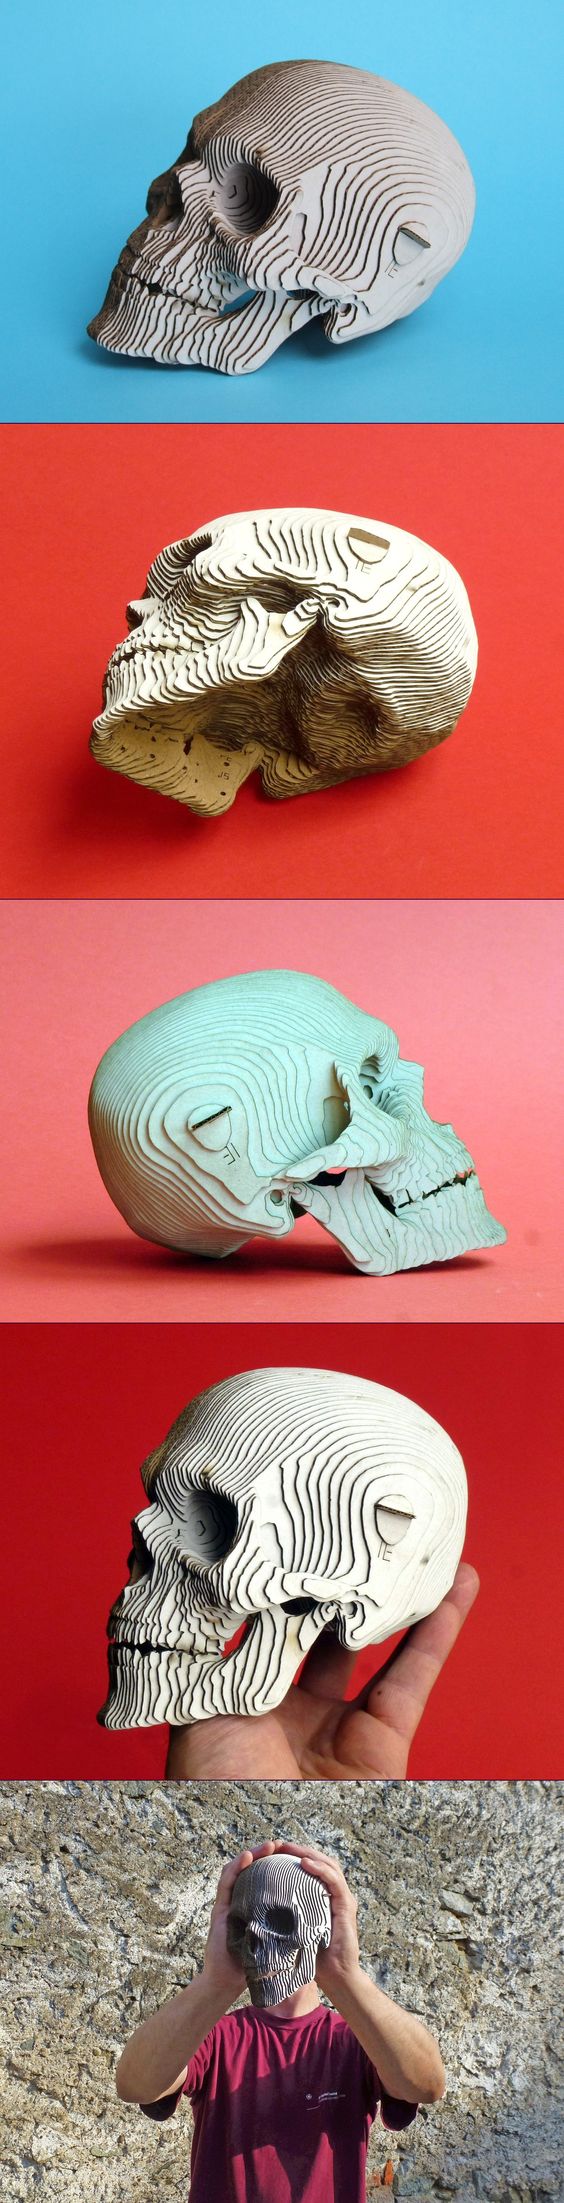 skull head 